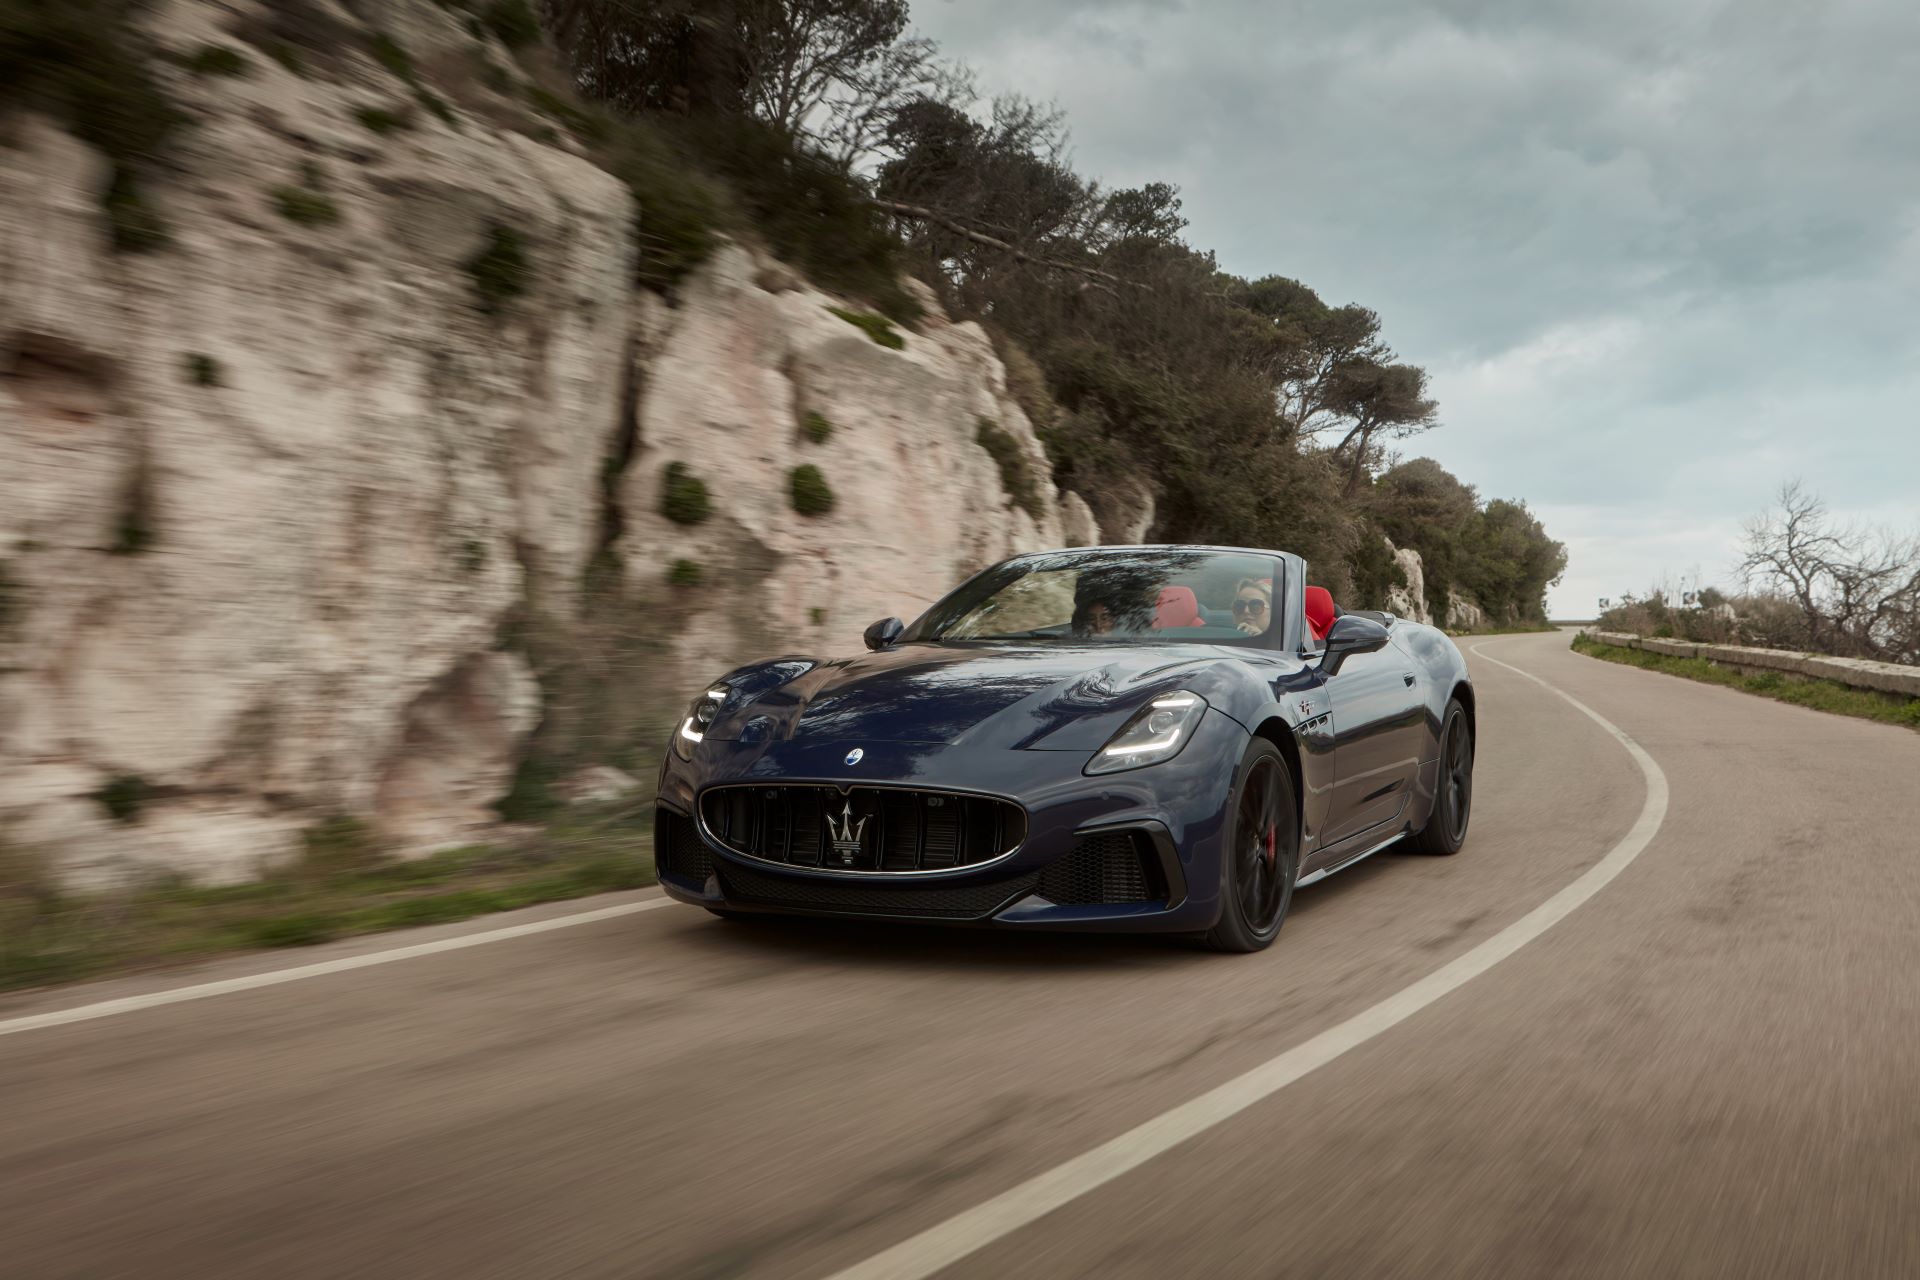 Maserati presents “The all-new Maserati GranCabrio. Our Ode to Joy.”